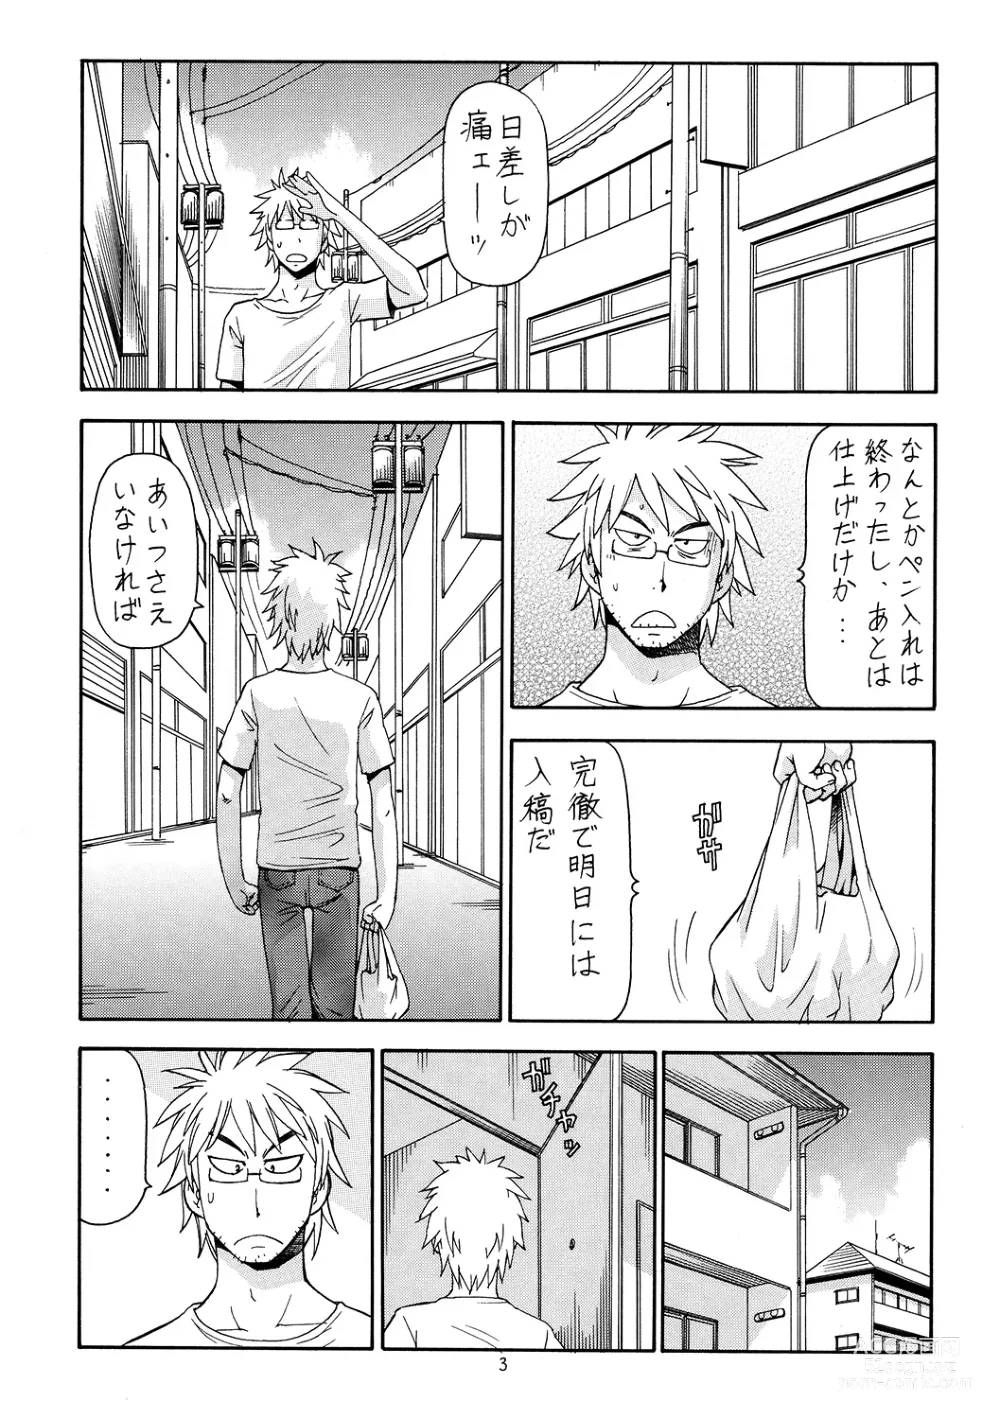 Page 4 of doujinshi Ita Yome Monogatari 2